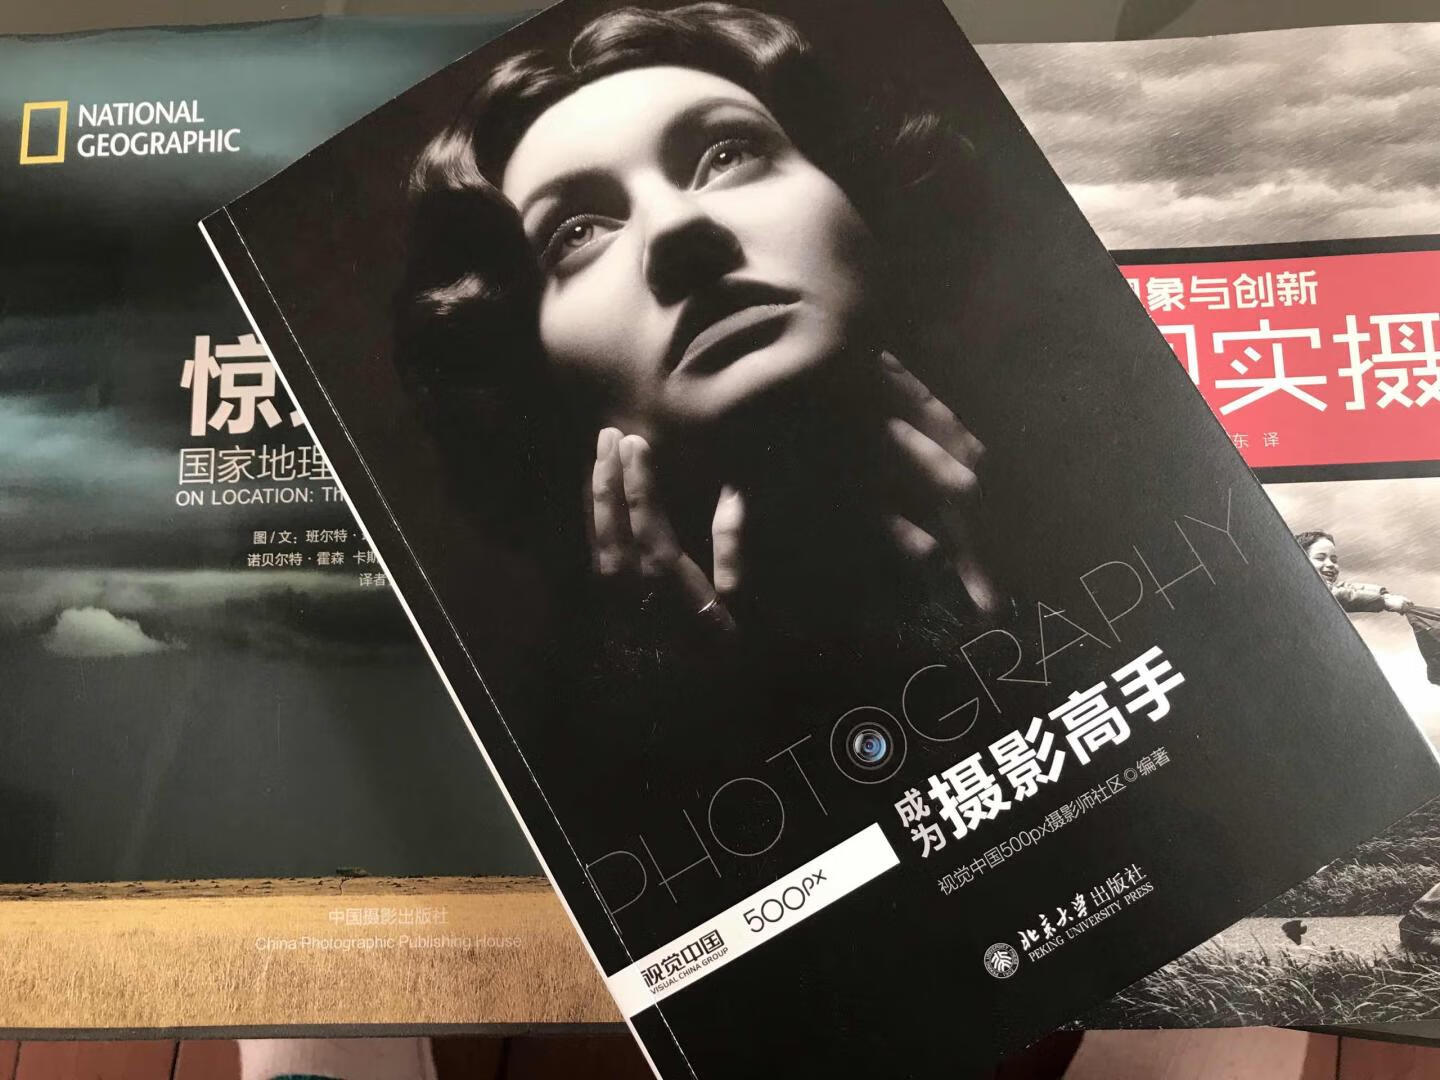 视觉中国500px《成为摄影高手》这本图书的核心技术都是干货，正是我所需要的摄影图书，非常棒！期待下一本的出版！